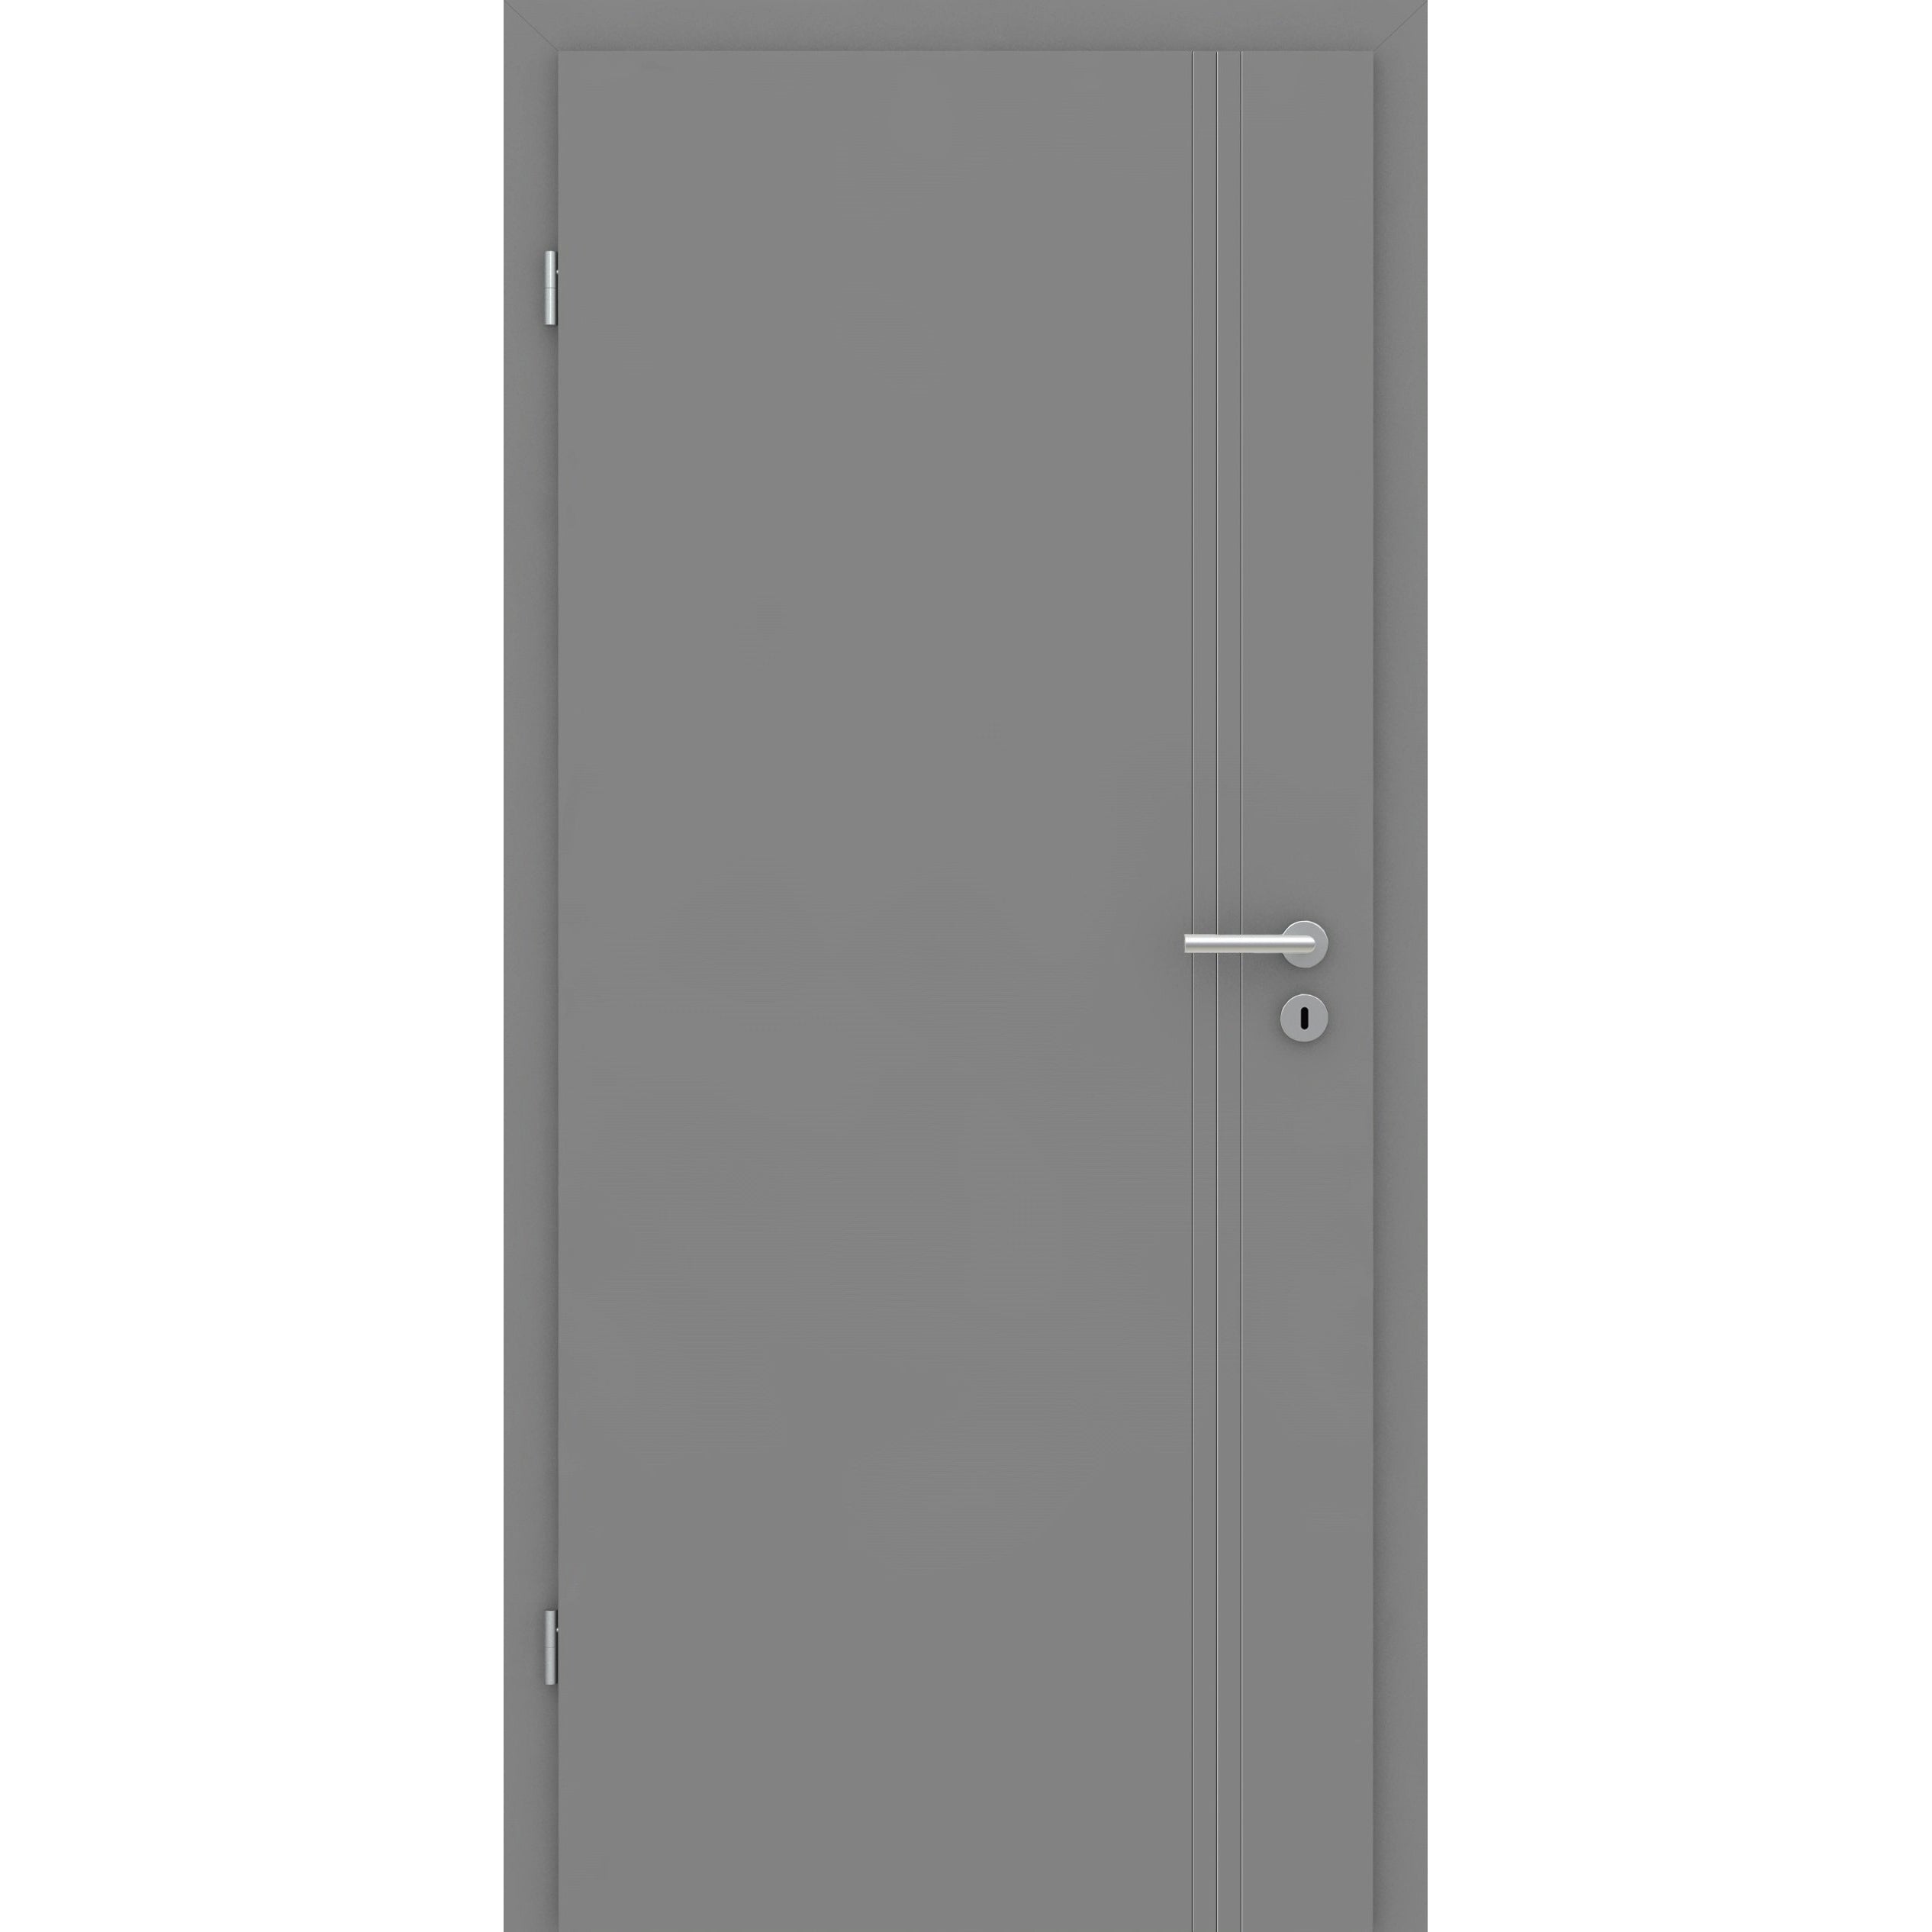 Wohnungseingangstür grau 3 Rillen aufrecht Schlosseite Designkante SK2 / KK3 - Modell Designtür VS37